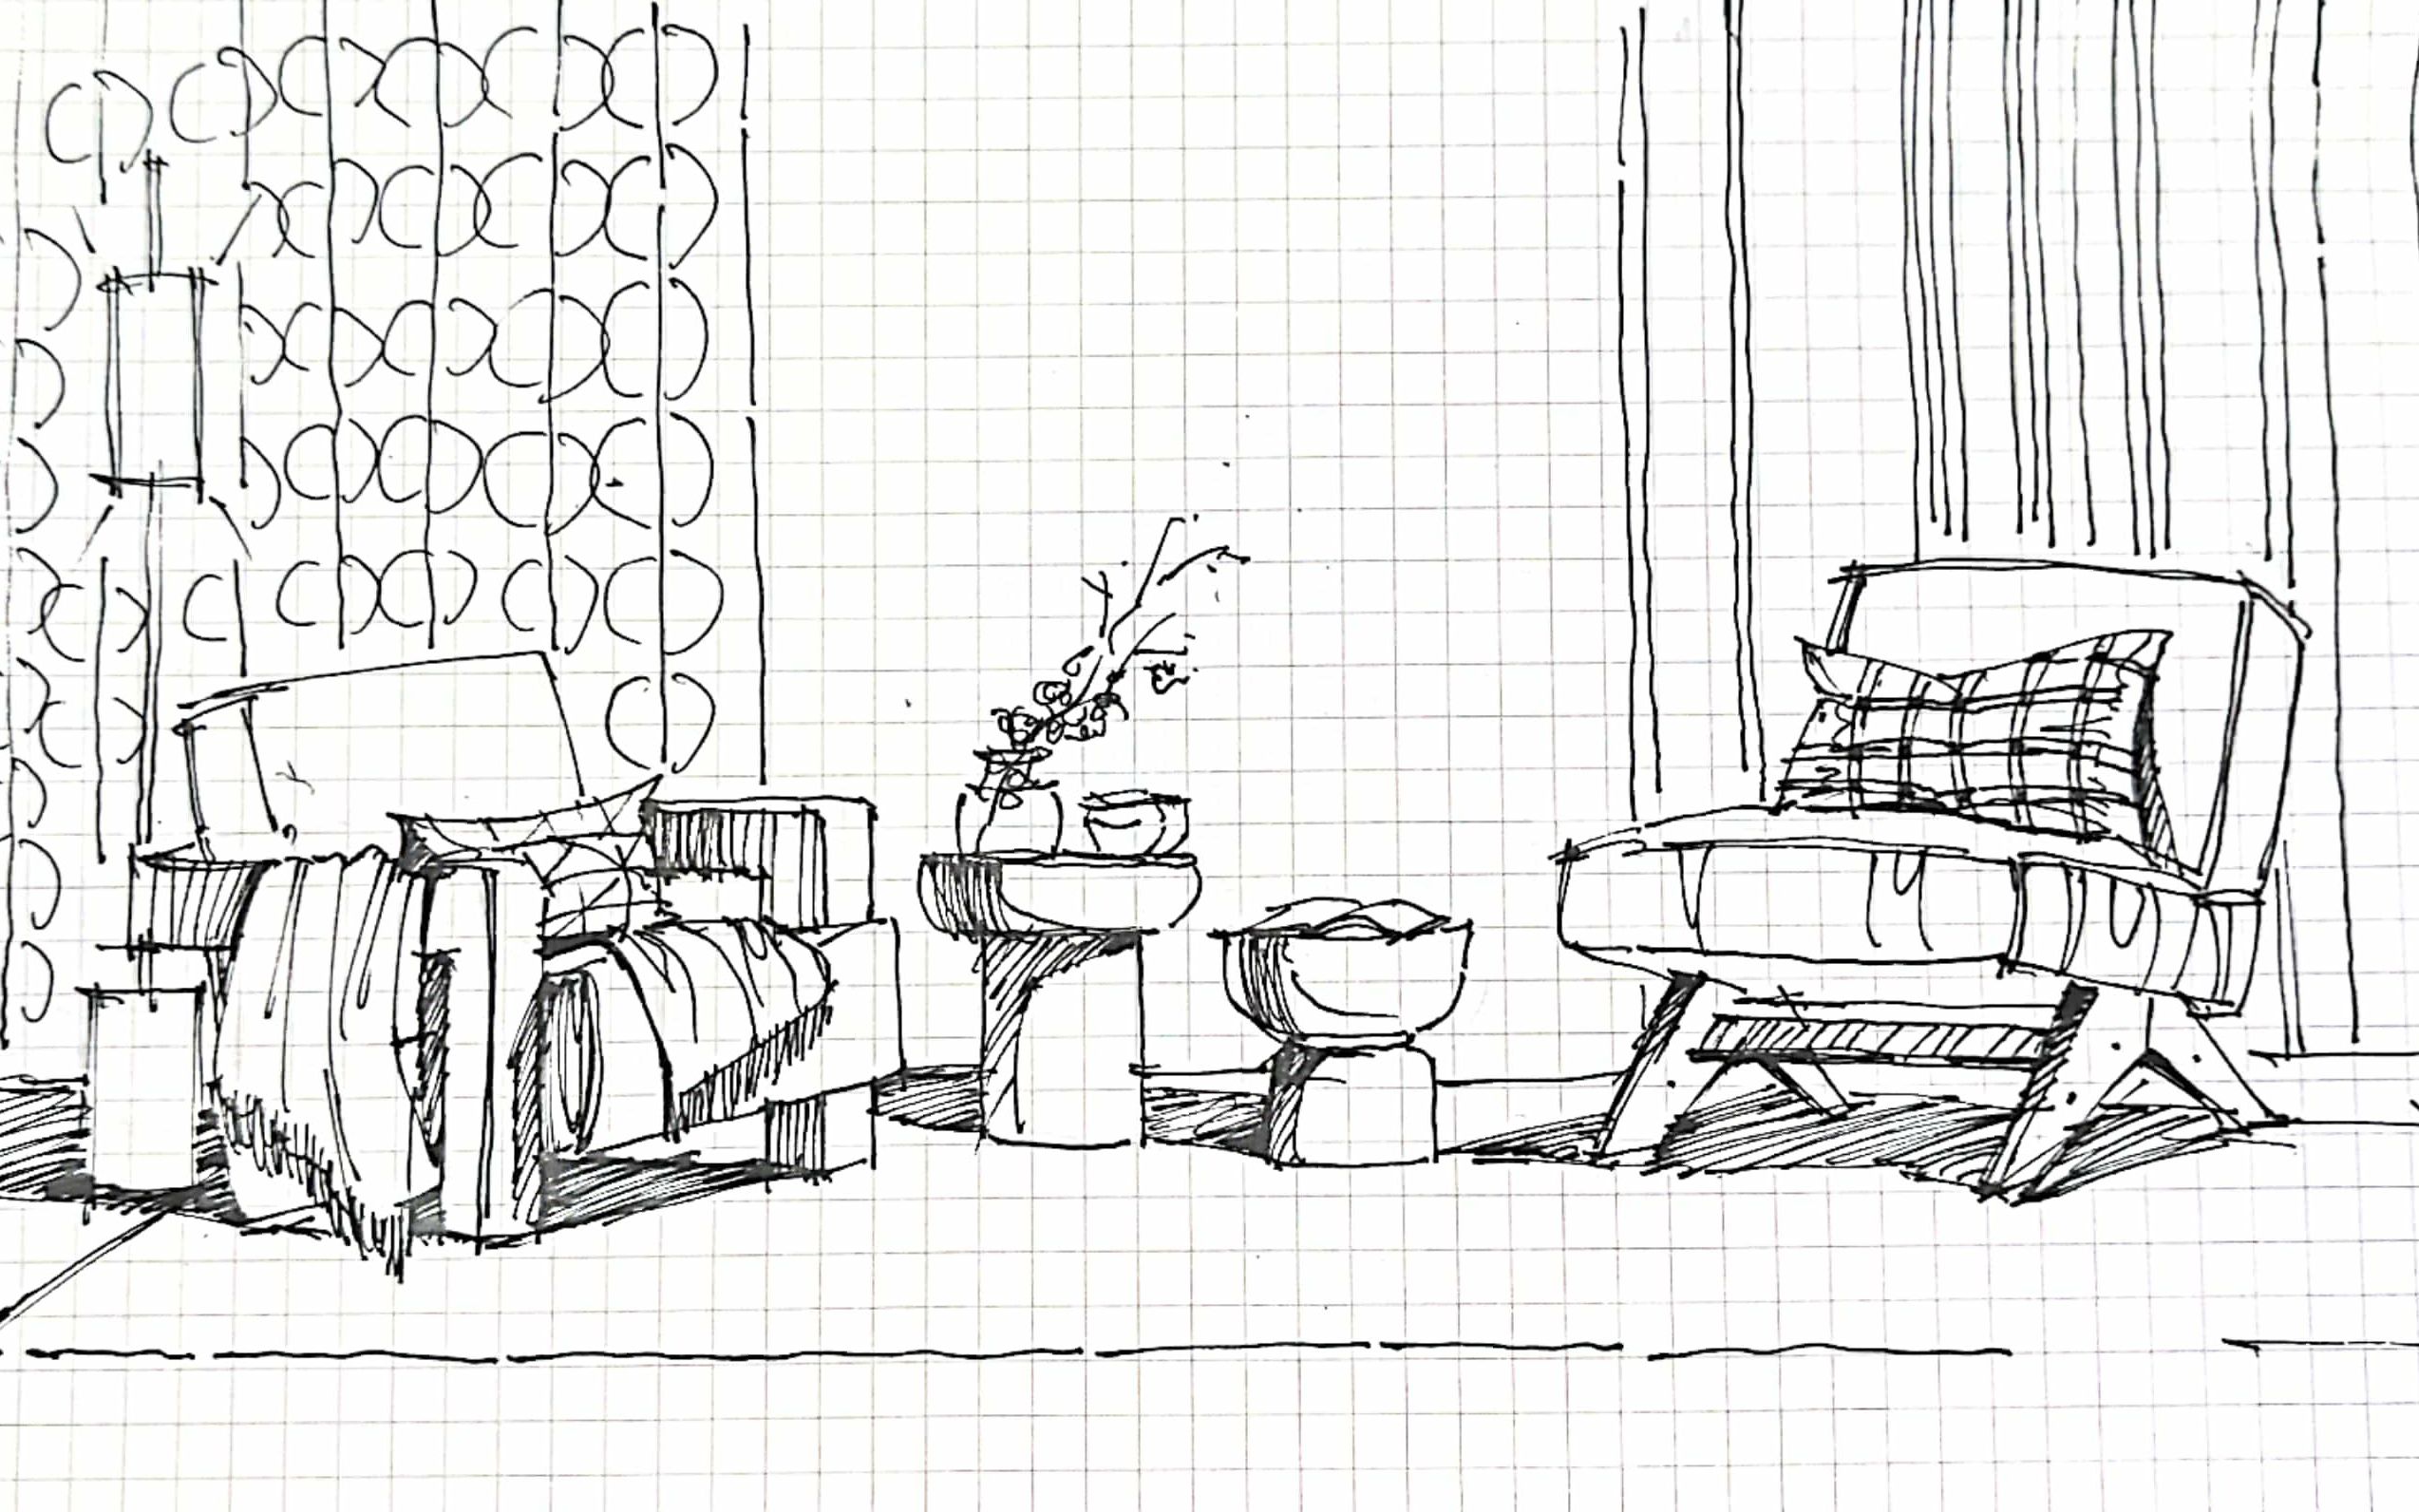 【润下课堂】保姆级室内手绘教程:沙发组合写生